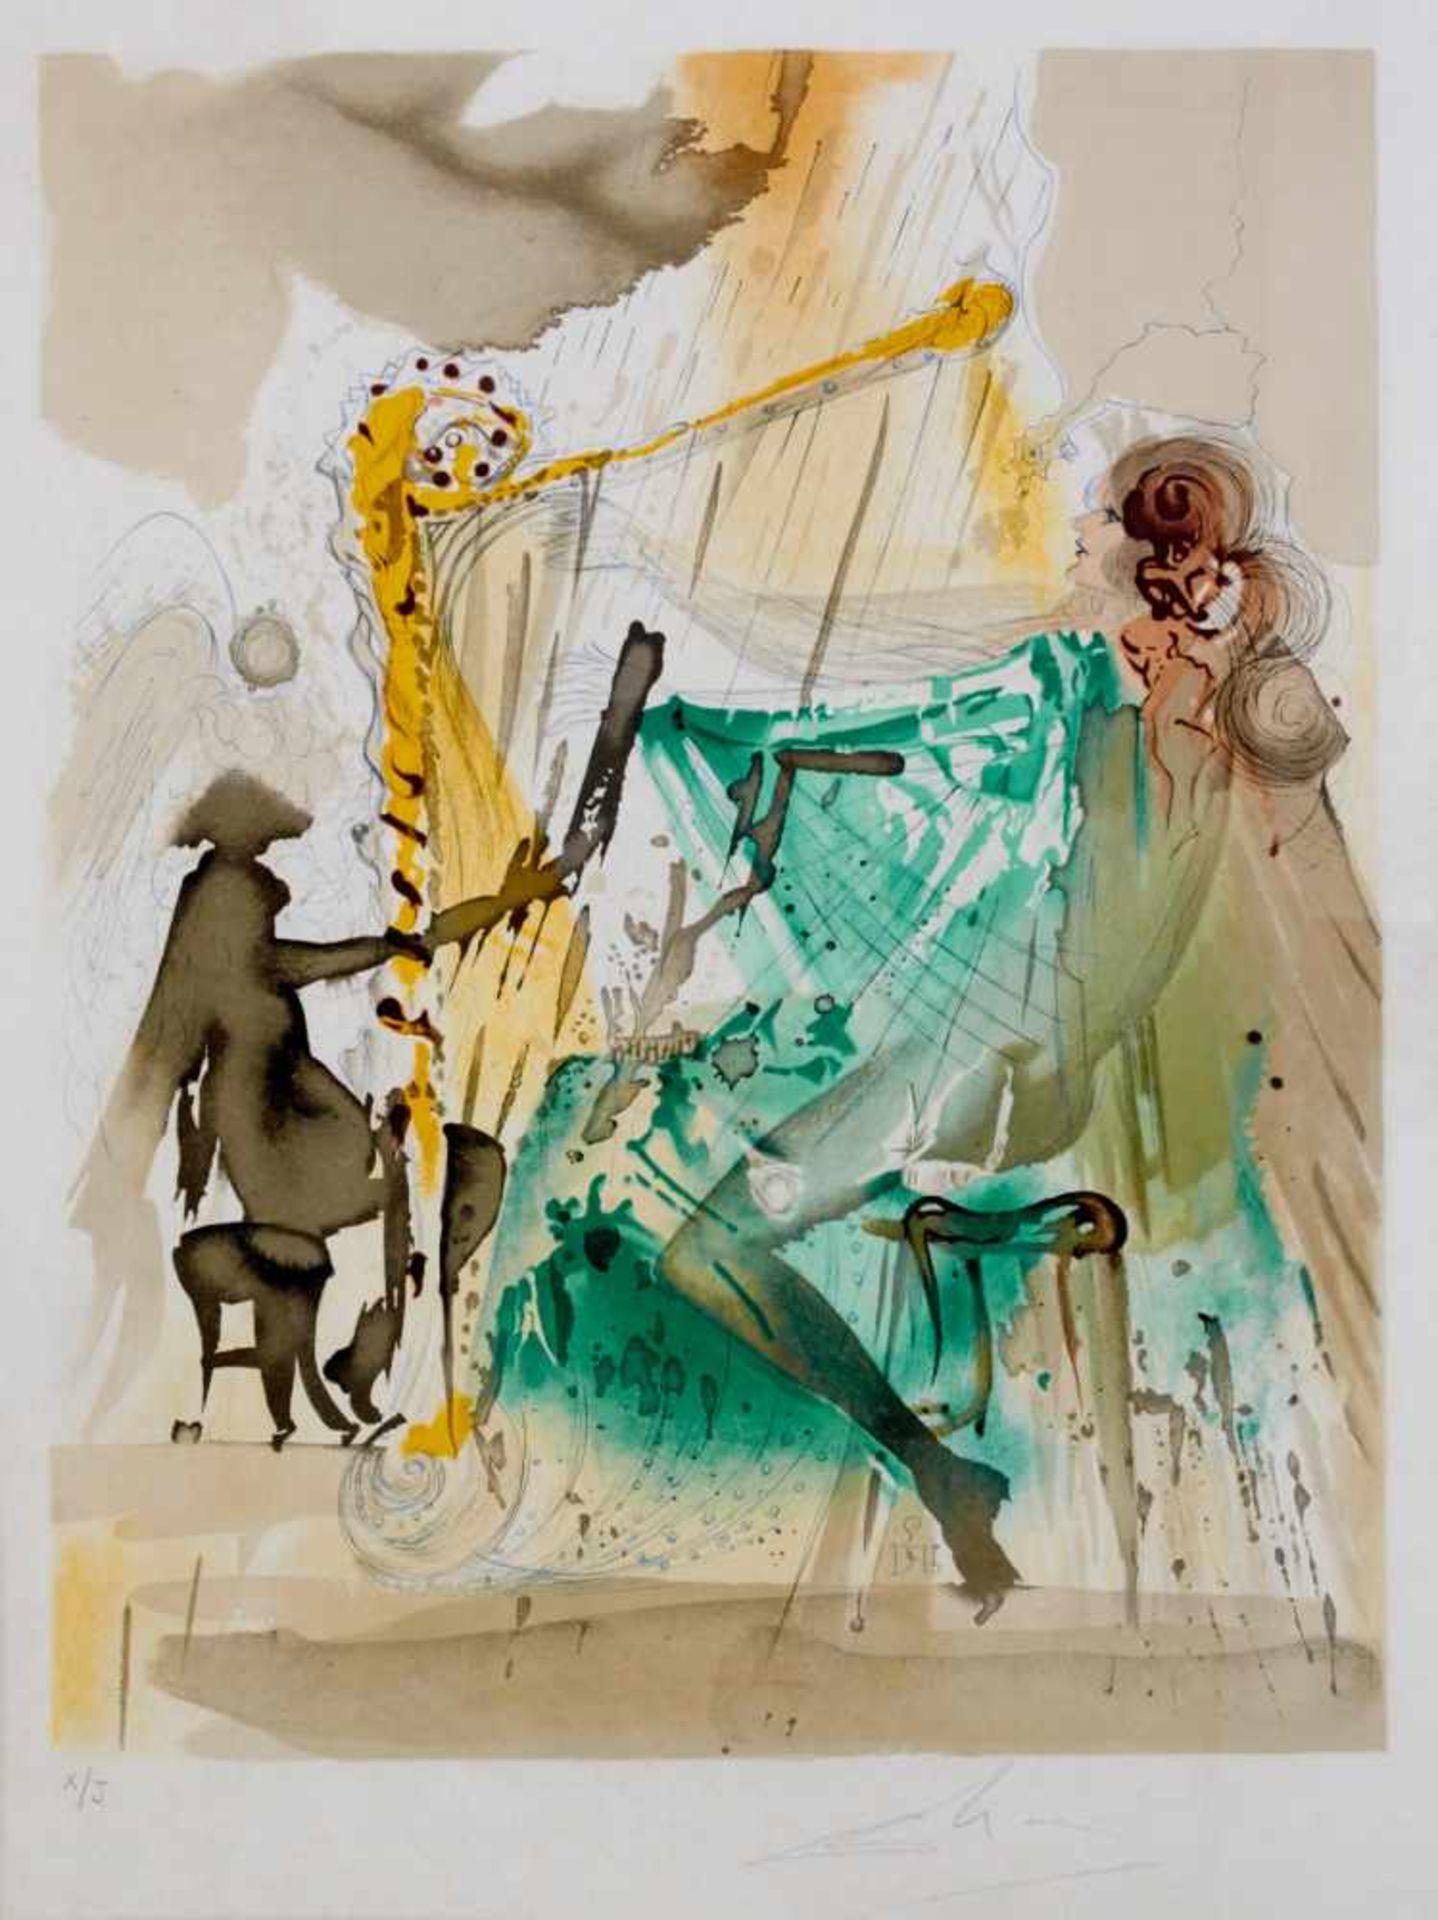 Dalí, Salvador(Figueres 1904-1989 ebda.), Die Harfenspielerin: Sinnbild von Carmens Liebe.